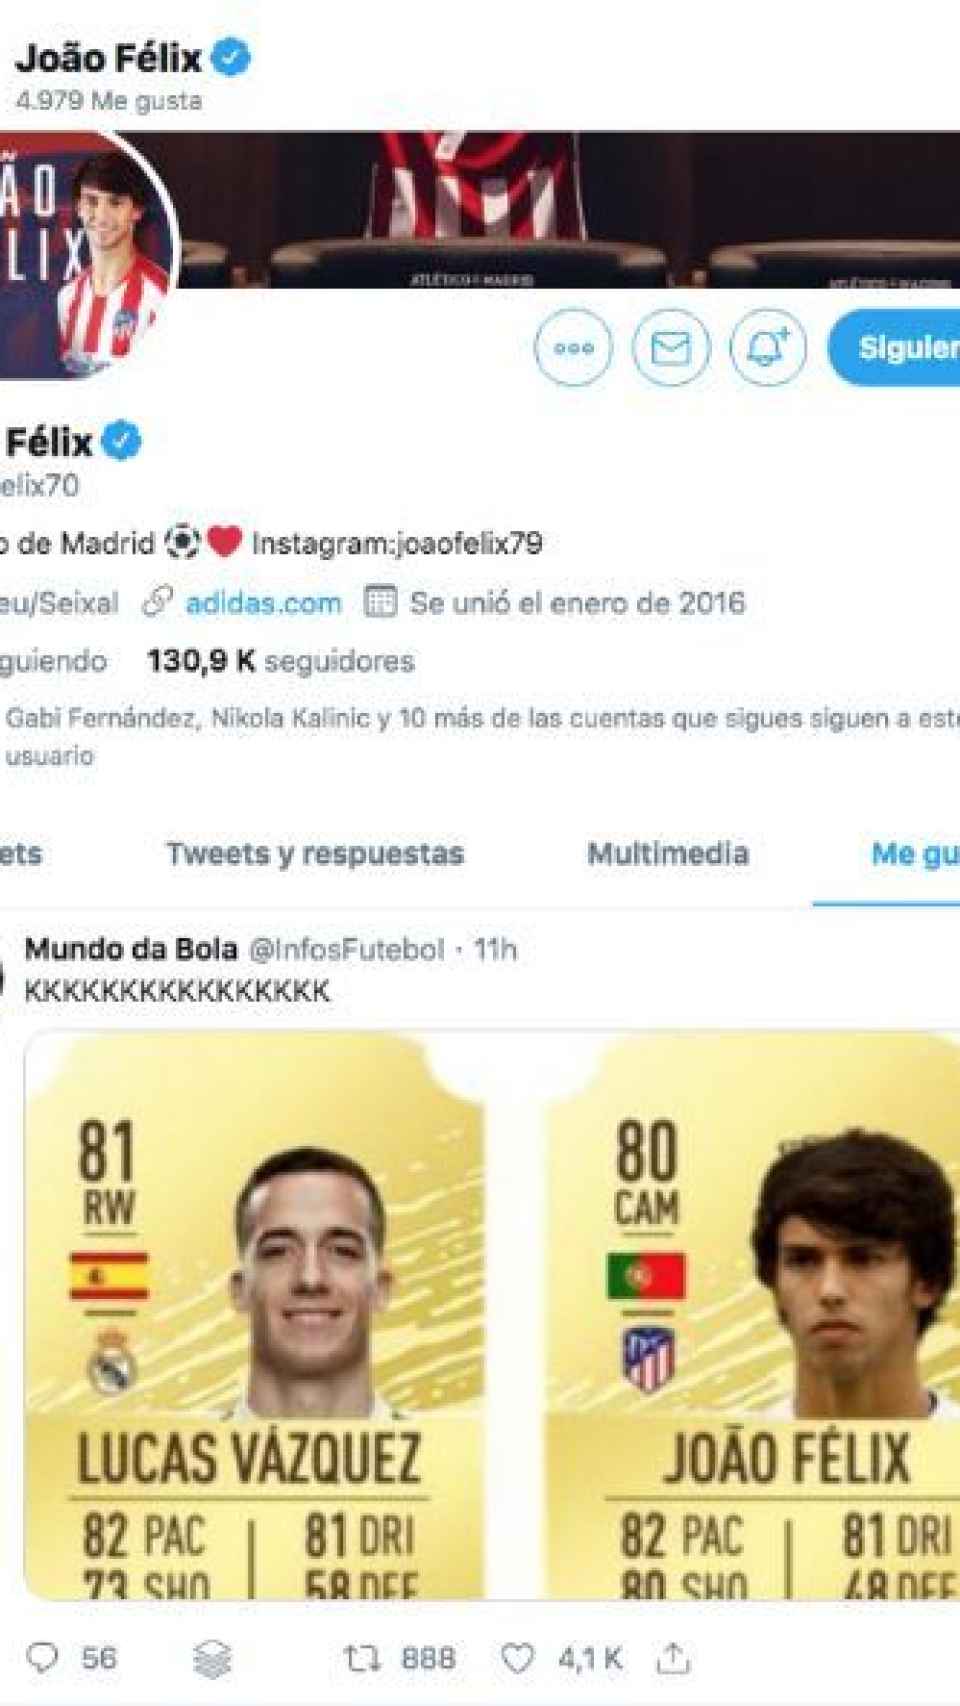 Valoración del FIFA de Joao Félix y Lucas Vázquez. Foto: Twitter (@joaofelix70)